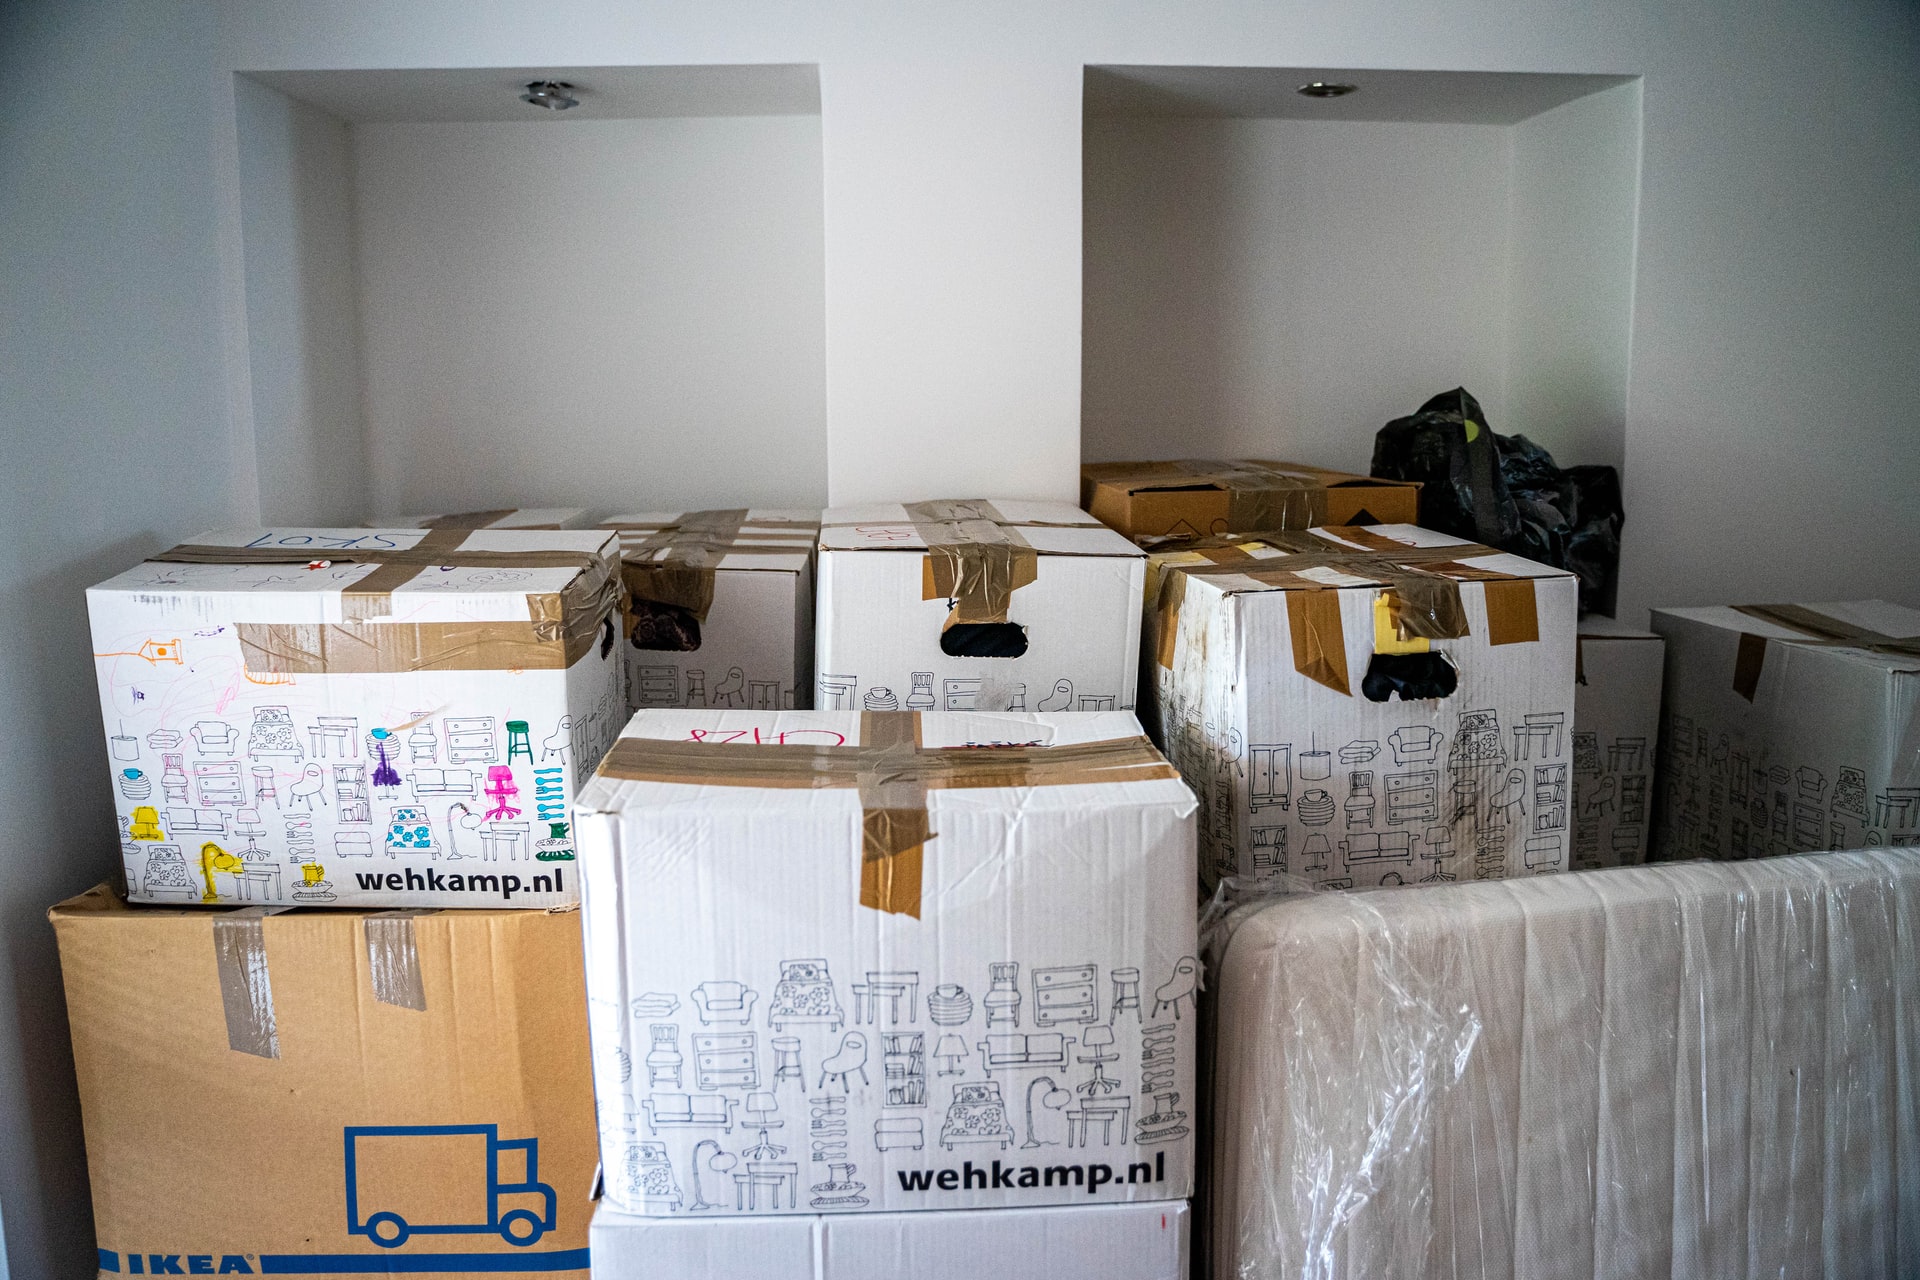 Vlog - Organizing My Shipping Boxes at new Warehouse ~